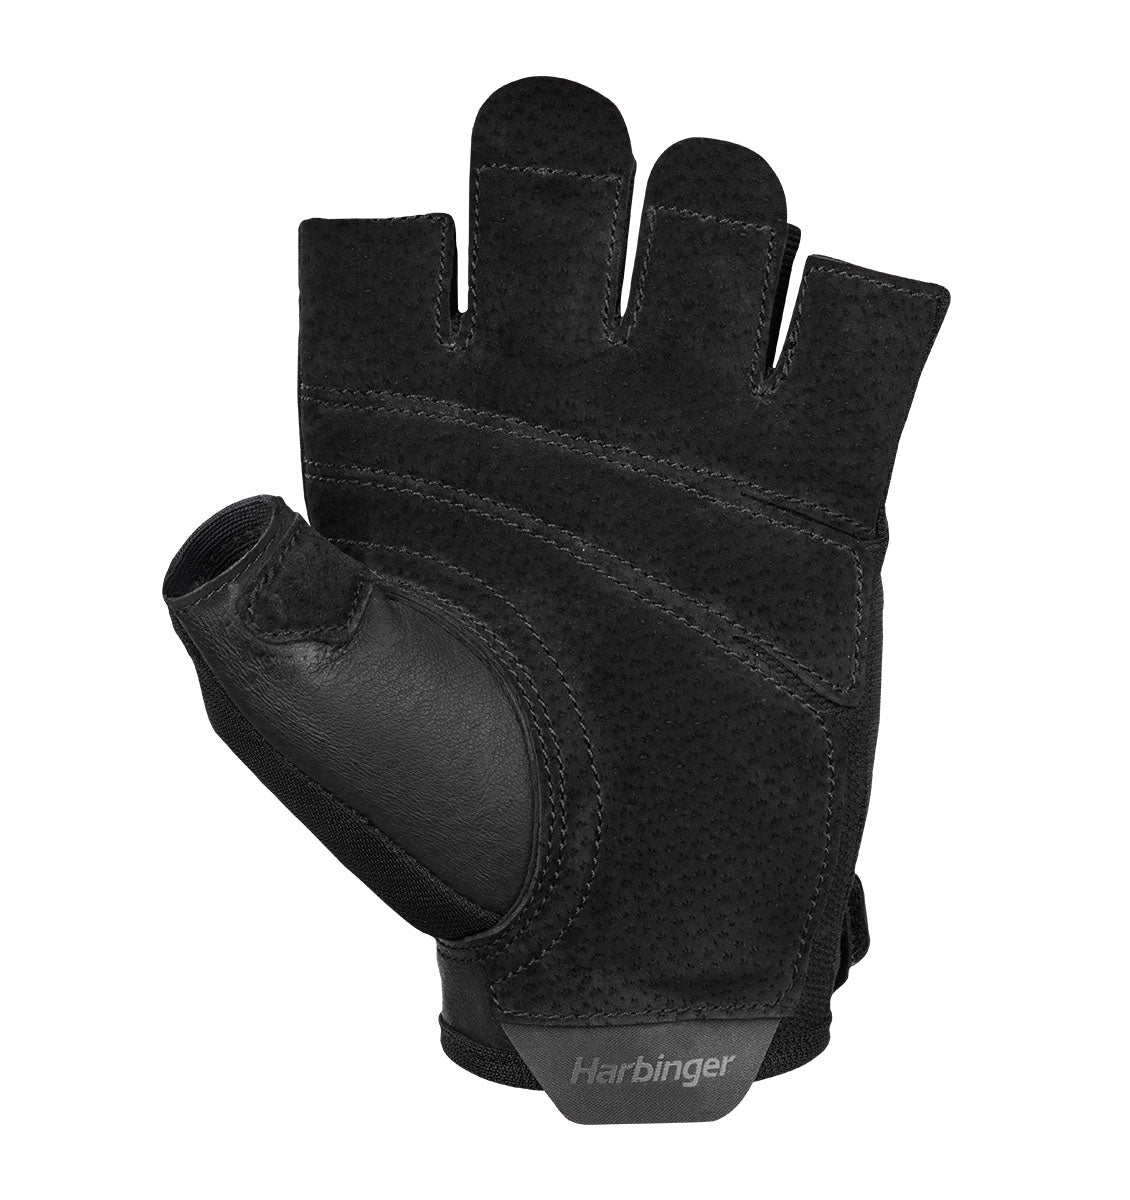 Harbinger Power Gloves 2.0 - Unisex - Black - 3